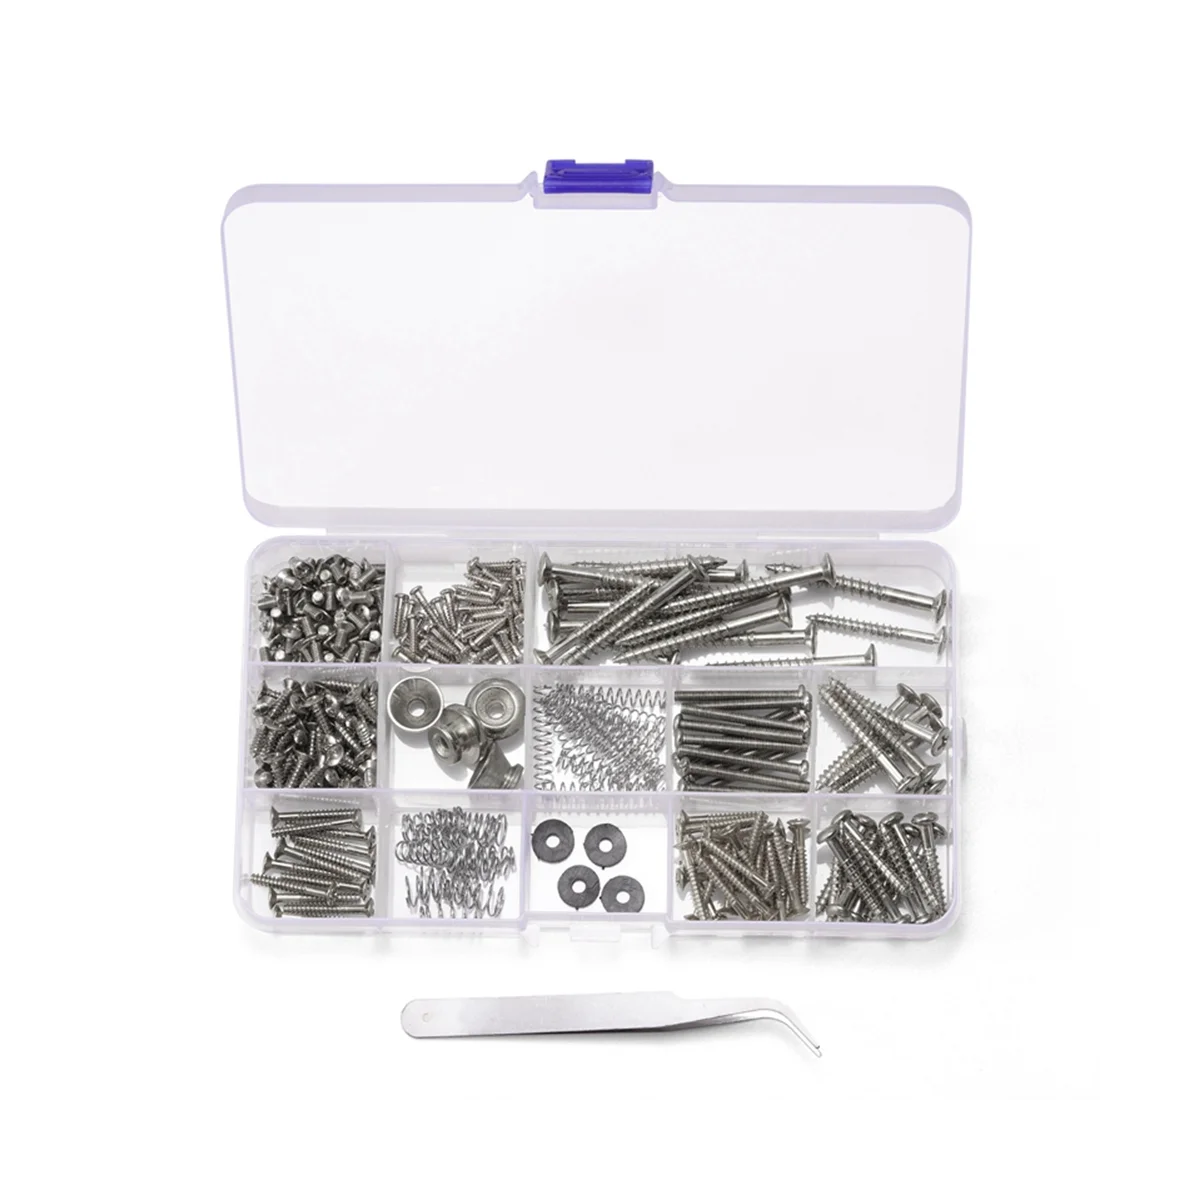 254Pcs/Mnoho Kytara Šrouby Kit pro Zadní Deska Mount Sortiment s Úložný Box pro Elektrická Kytara DIY Nástroje,Stříbrná